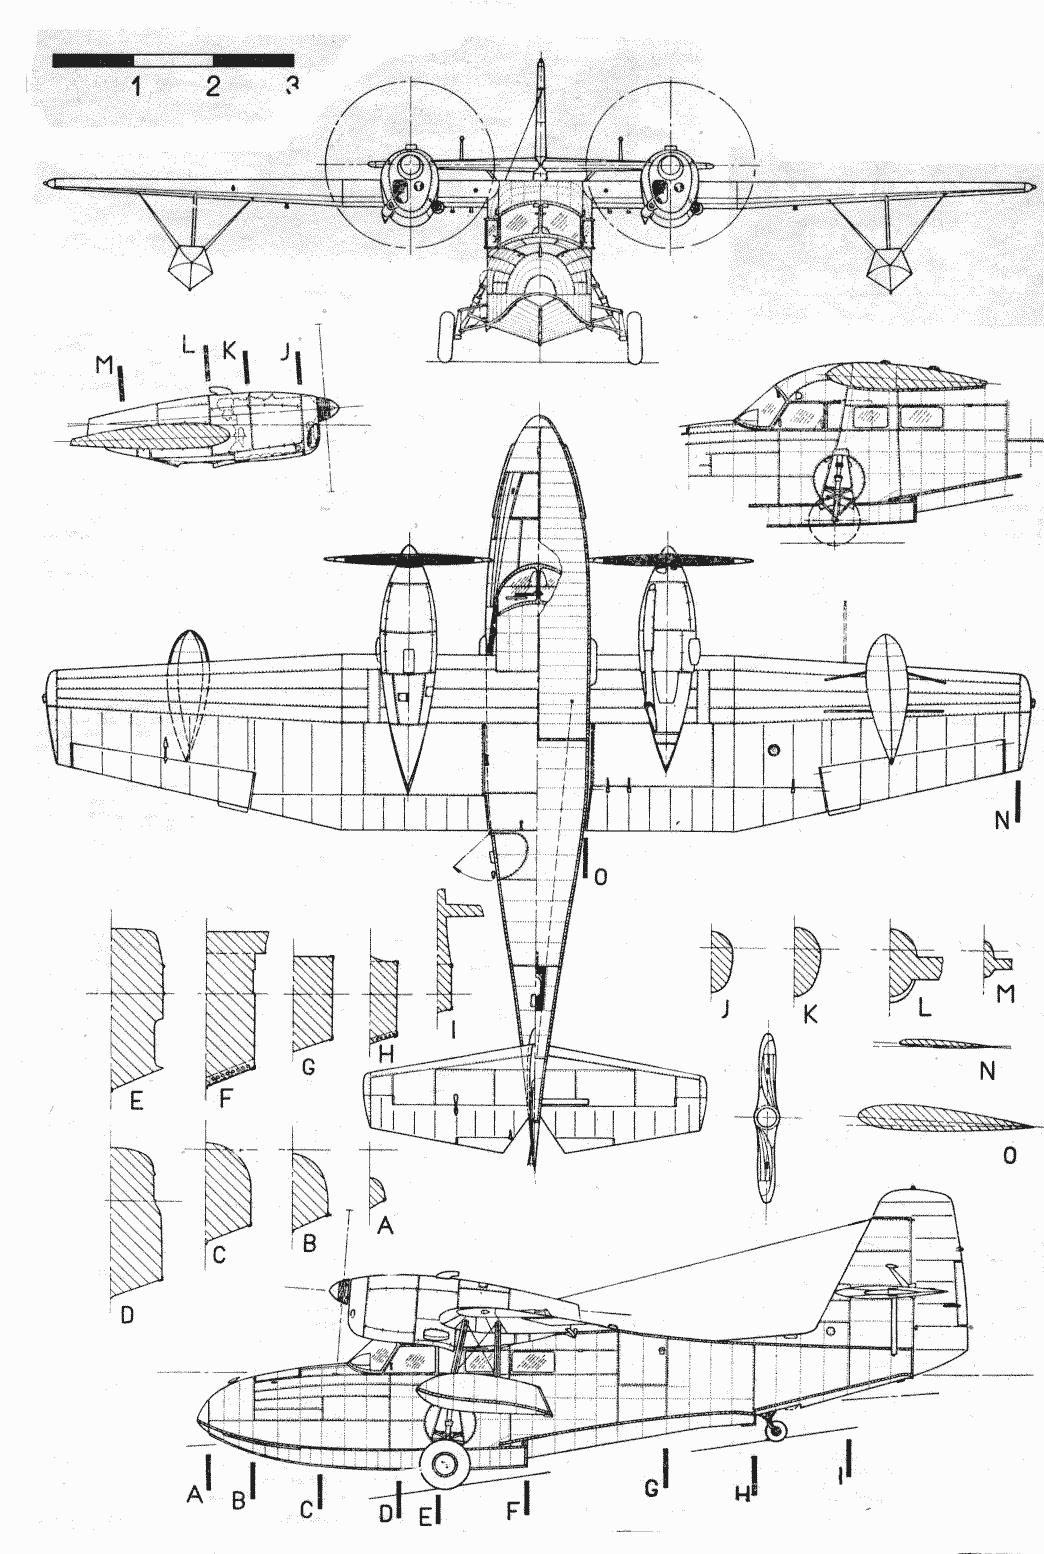 G-44 Widgeon blueprint